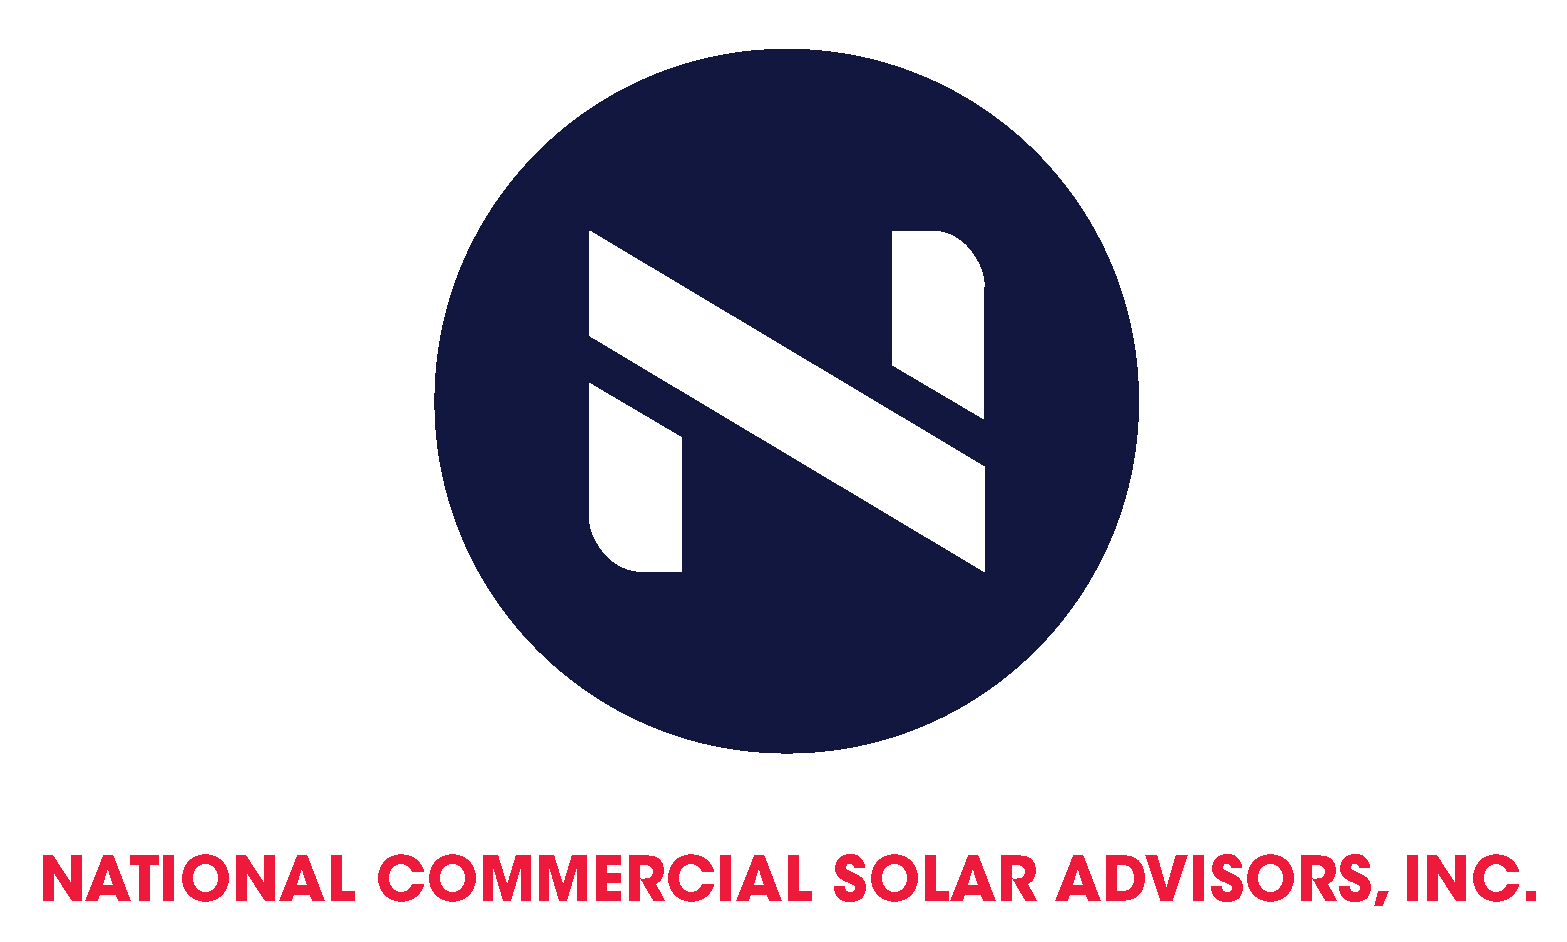 National Commercial Solar Advisors